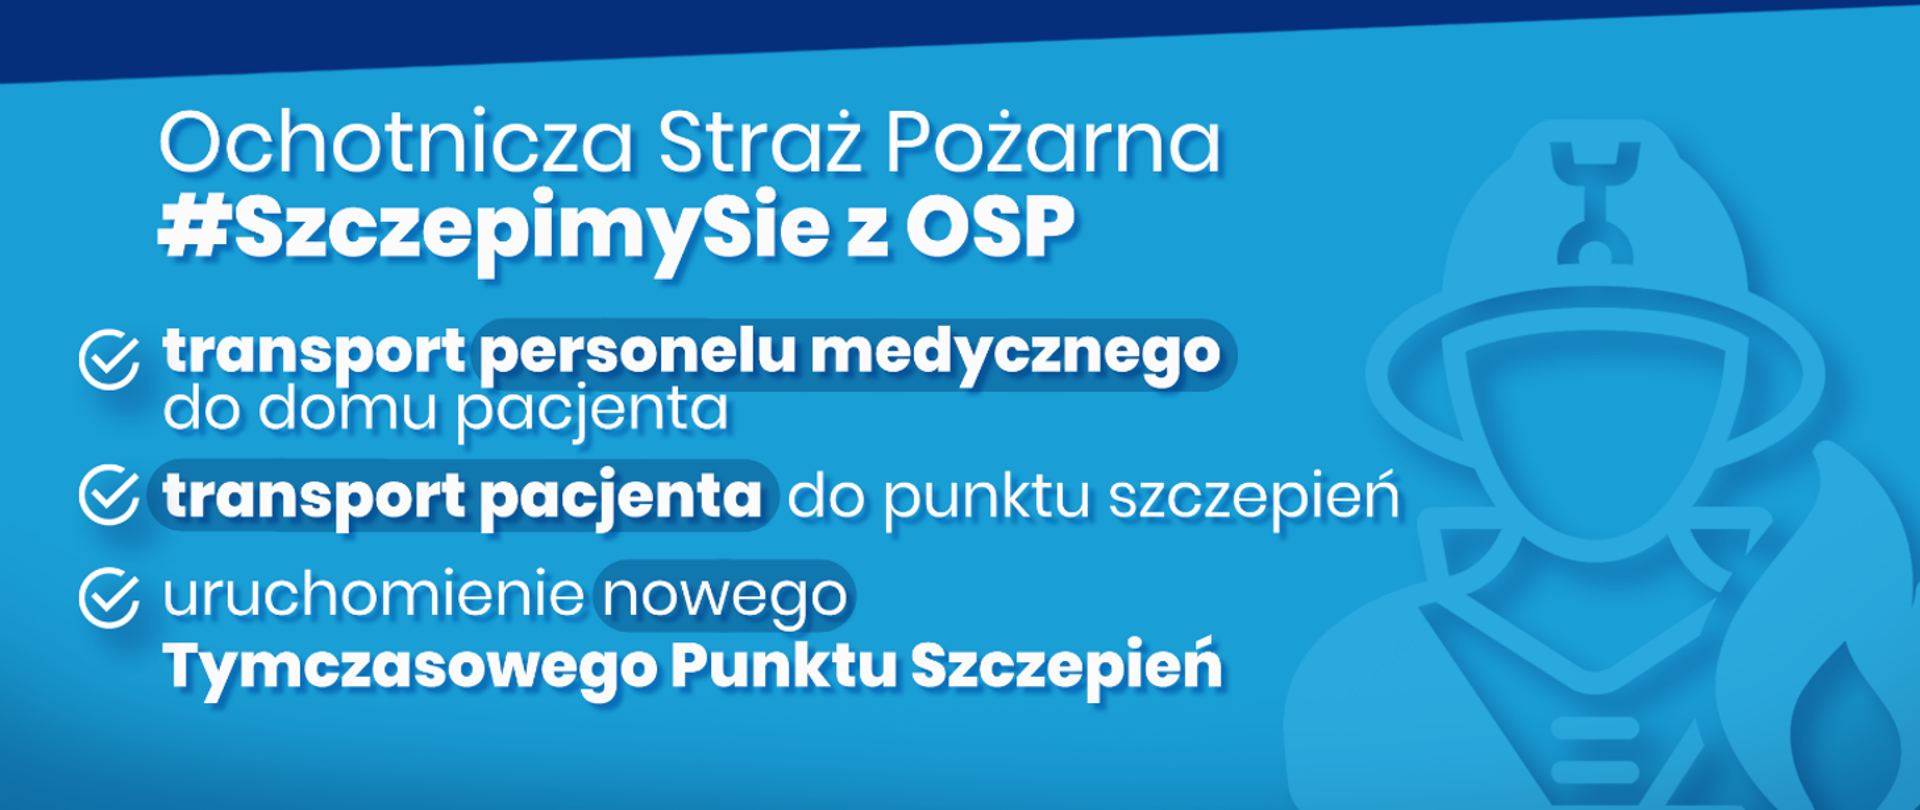 Plakat informacyjny do akcji "#SzczepimySię z OSP". Na plakacie przedstawiono 3 formy uczestnictwa w akcji poprzez jednostki OSP.